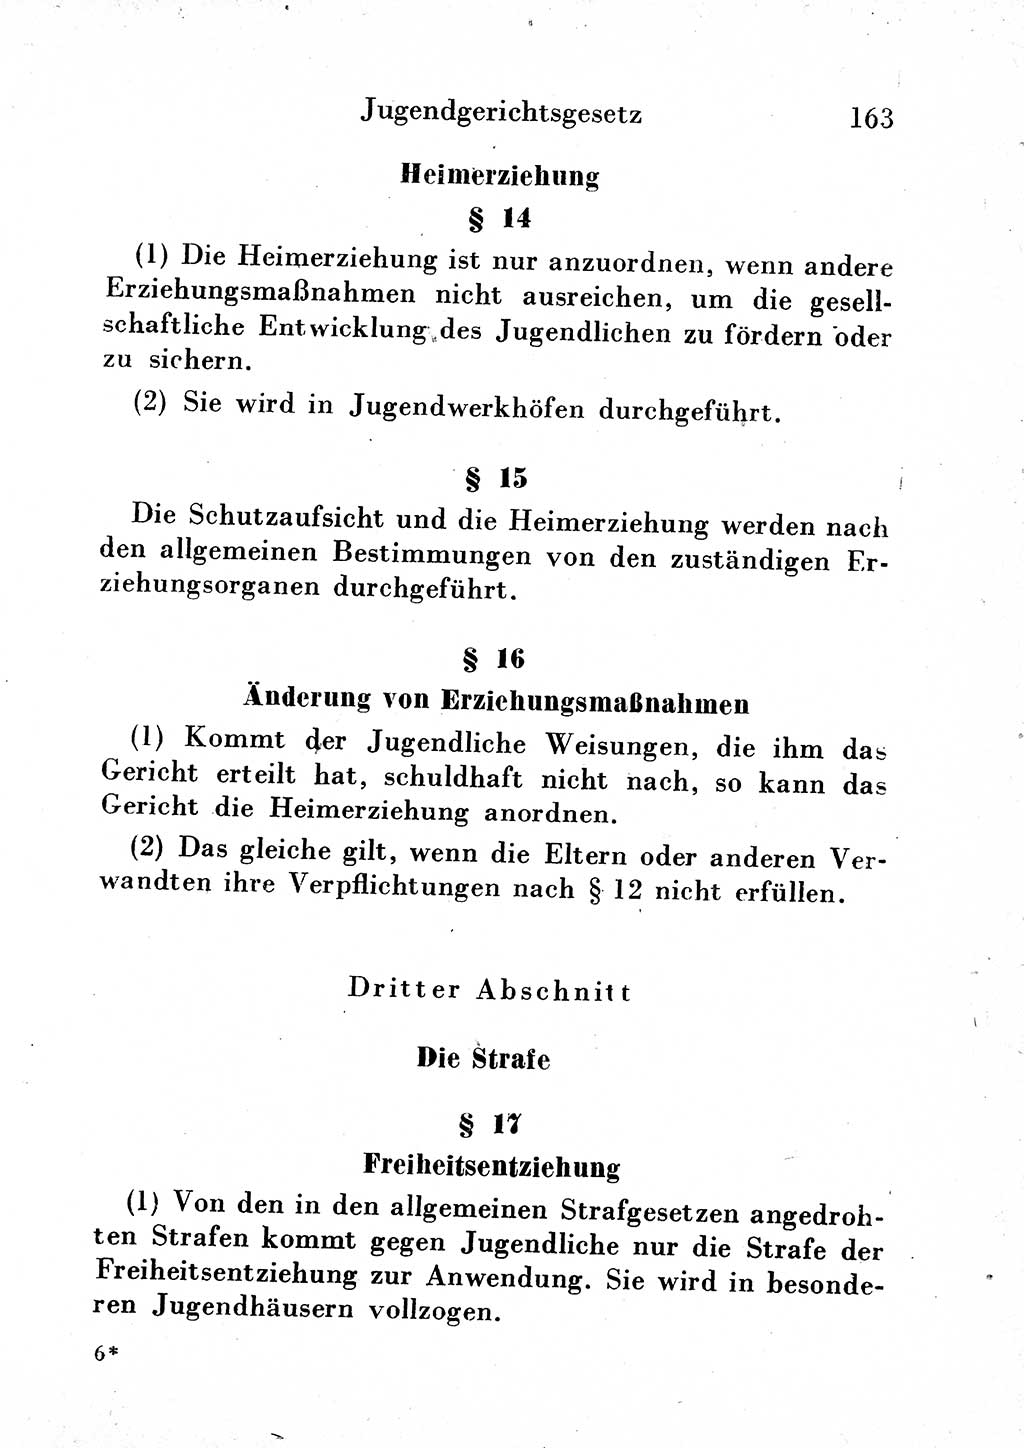 Strafgesetzbuch (StGB) und andere Strafgesetze [Deutsche Demokratische Republik (DDR)] 1954, Seite 163 (StGB Strafges. DDR 1954, S. 163)